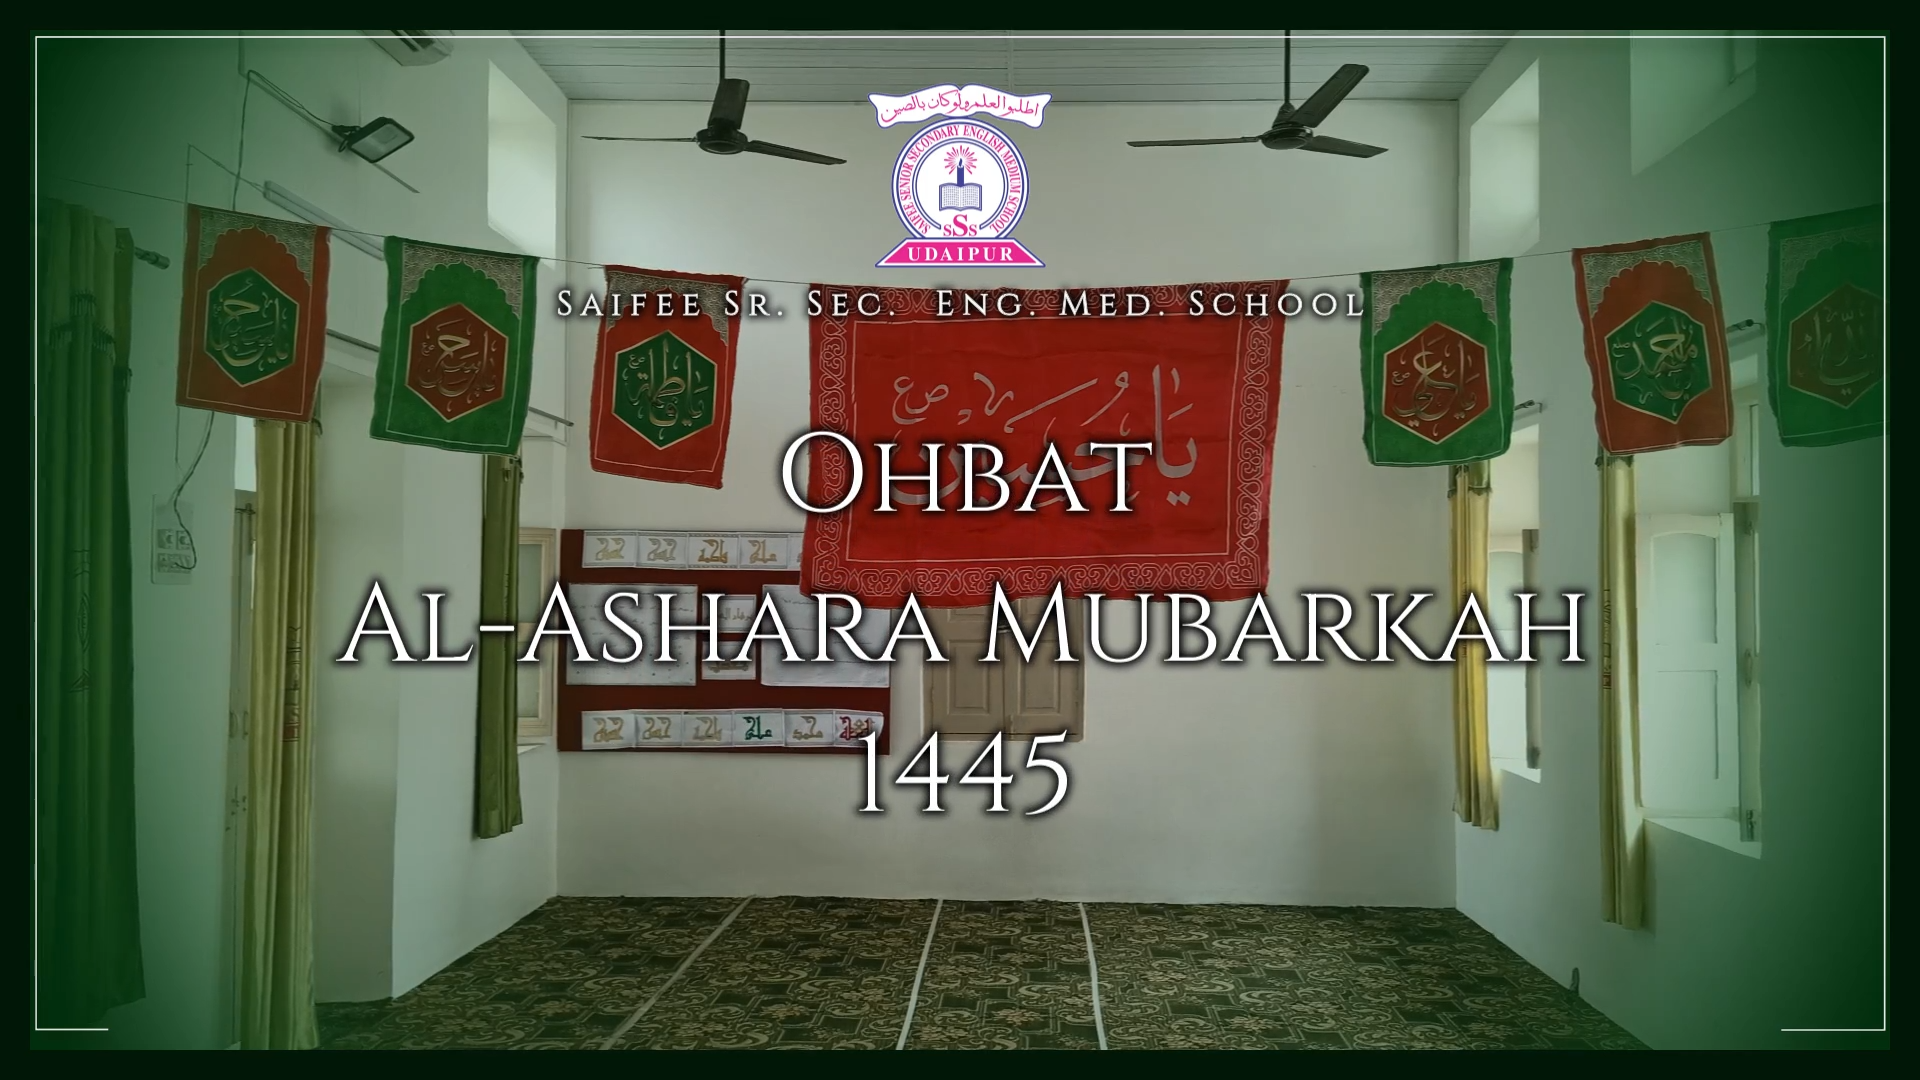 Majlis Ohbat Al-Ashara Mubarakah